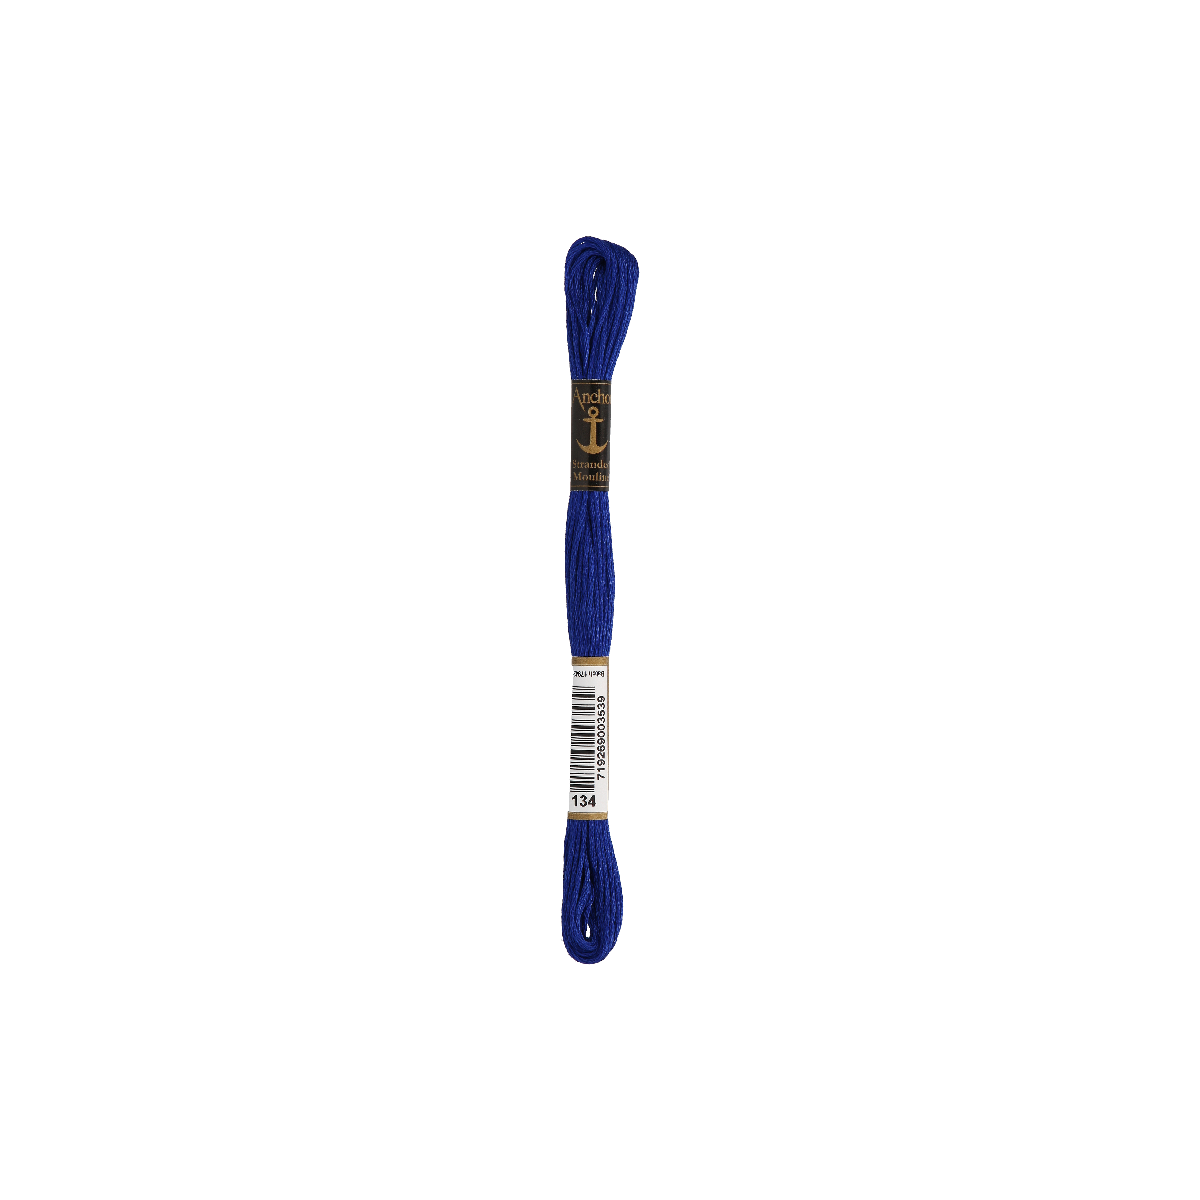 Anchor мулине 8m, тёмно-синий, Хлопок,  цвет 134, 6-ниточный